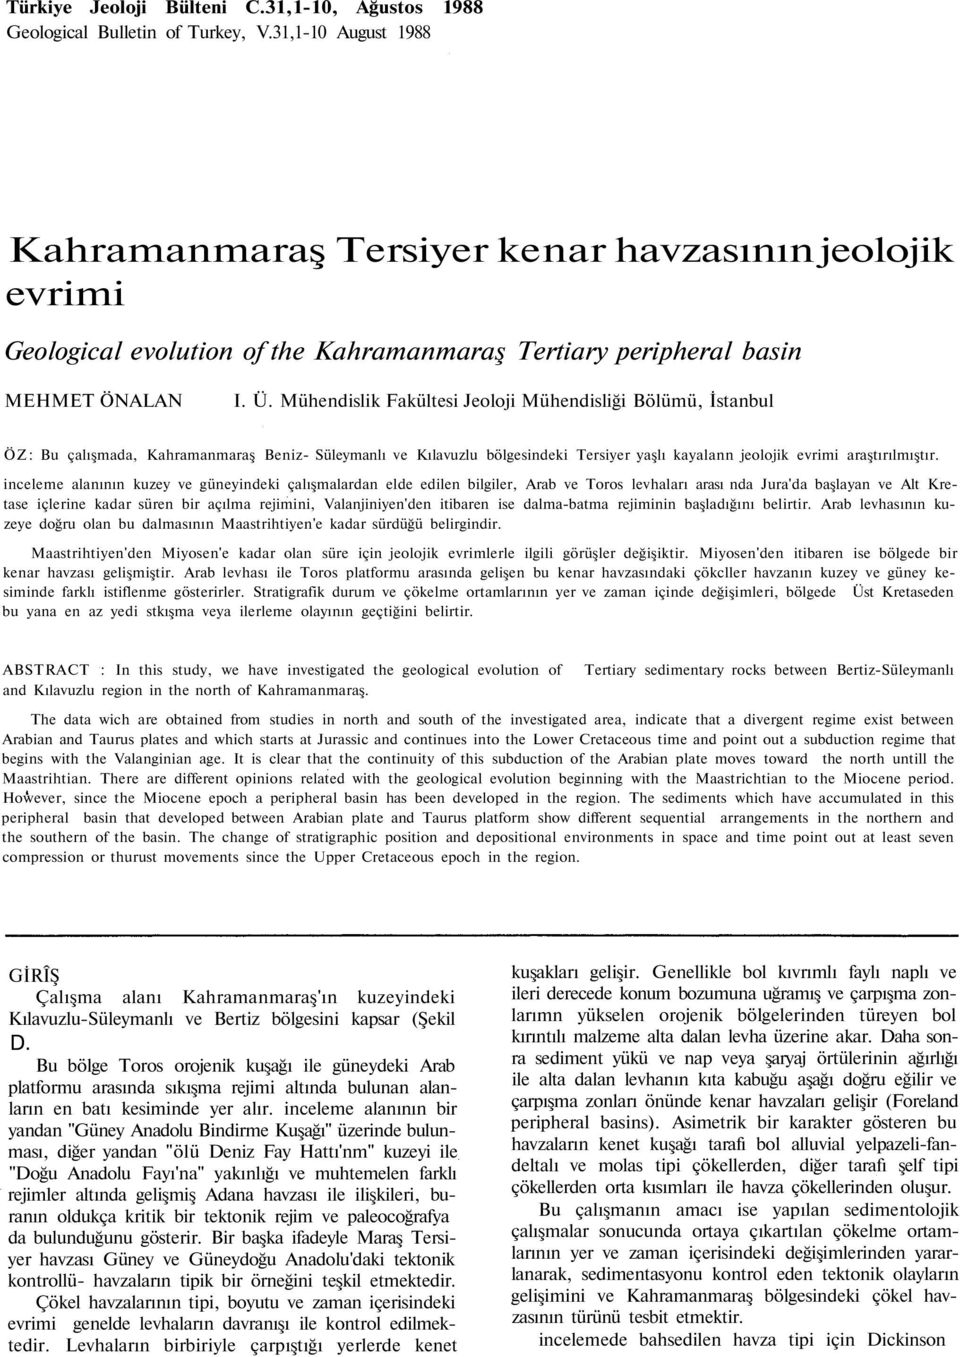 Mühendislik Fakültesi Jeoloji Mühendisliği Bölümü, İstanbul ÖZ: Bu çalışmada, Kahramanmaraş Beniz- Süleymanlı ve Kılavuzlu bölgesindeki Tersiyer yaşlı kayalann jeolojik evrimi araştırılmıştır.